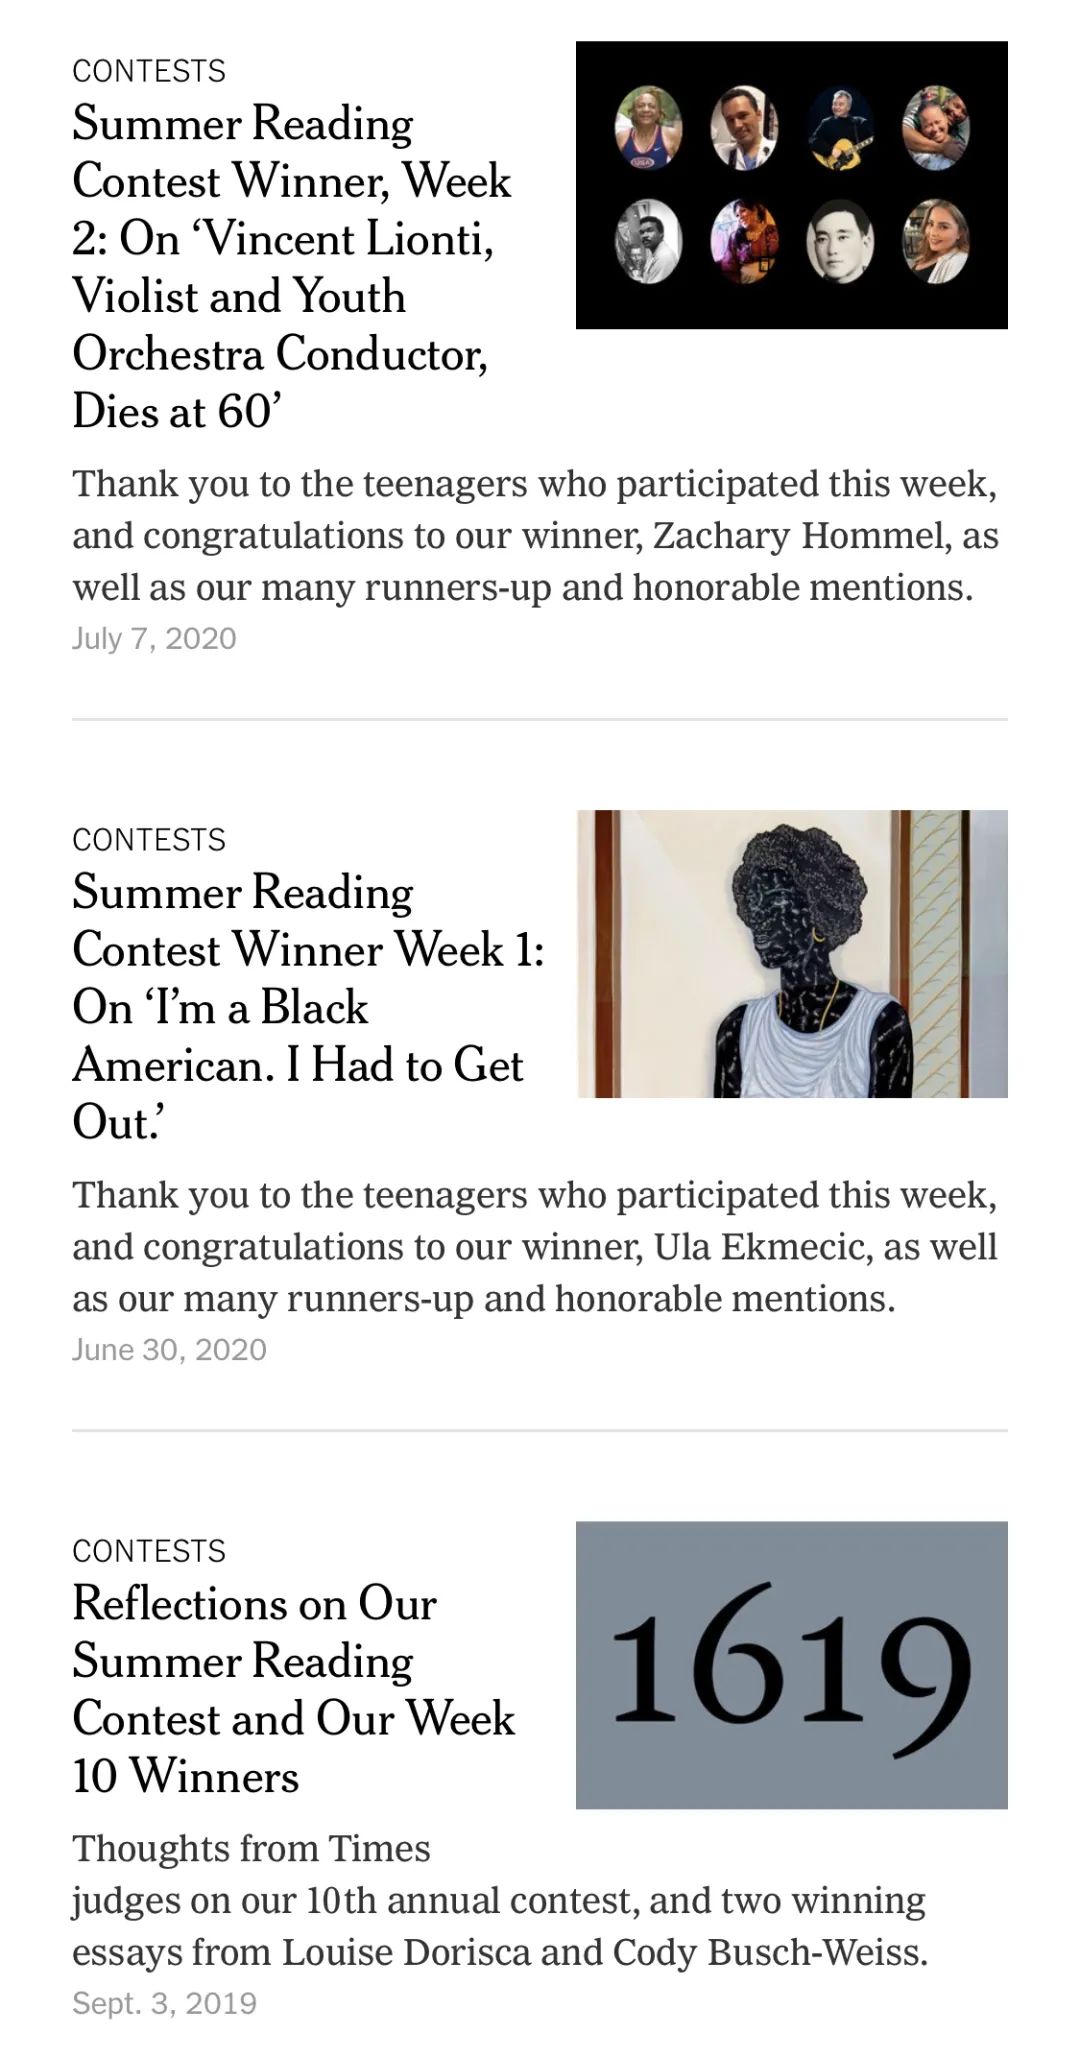 竞赛介绍 | 纽约时报夏季读写赛进入倒计时